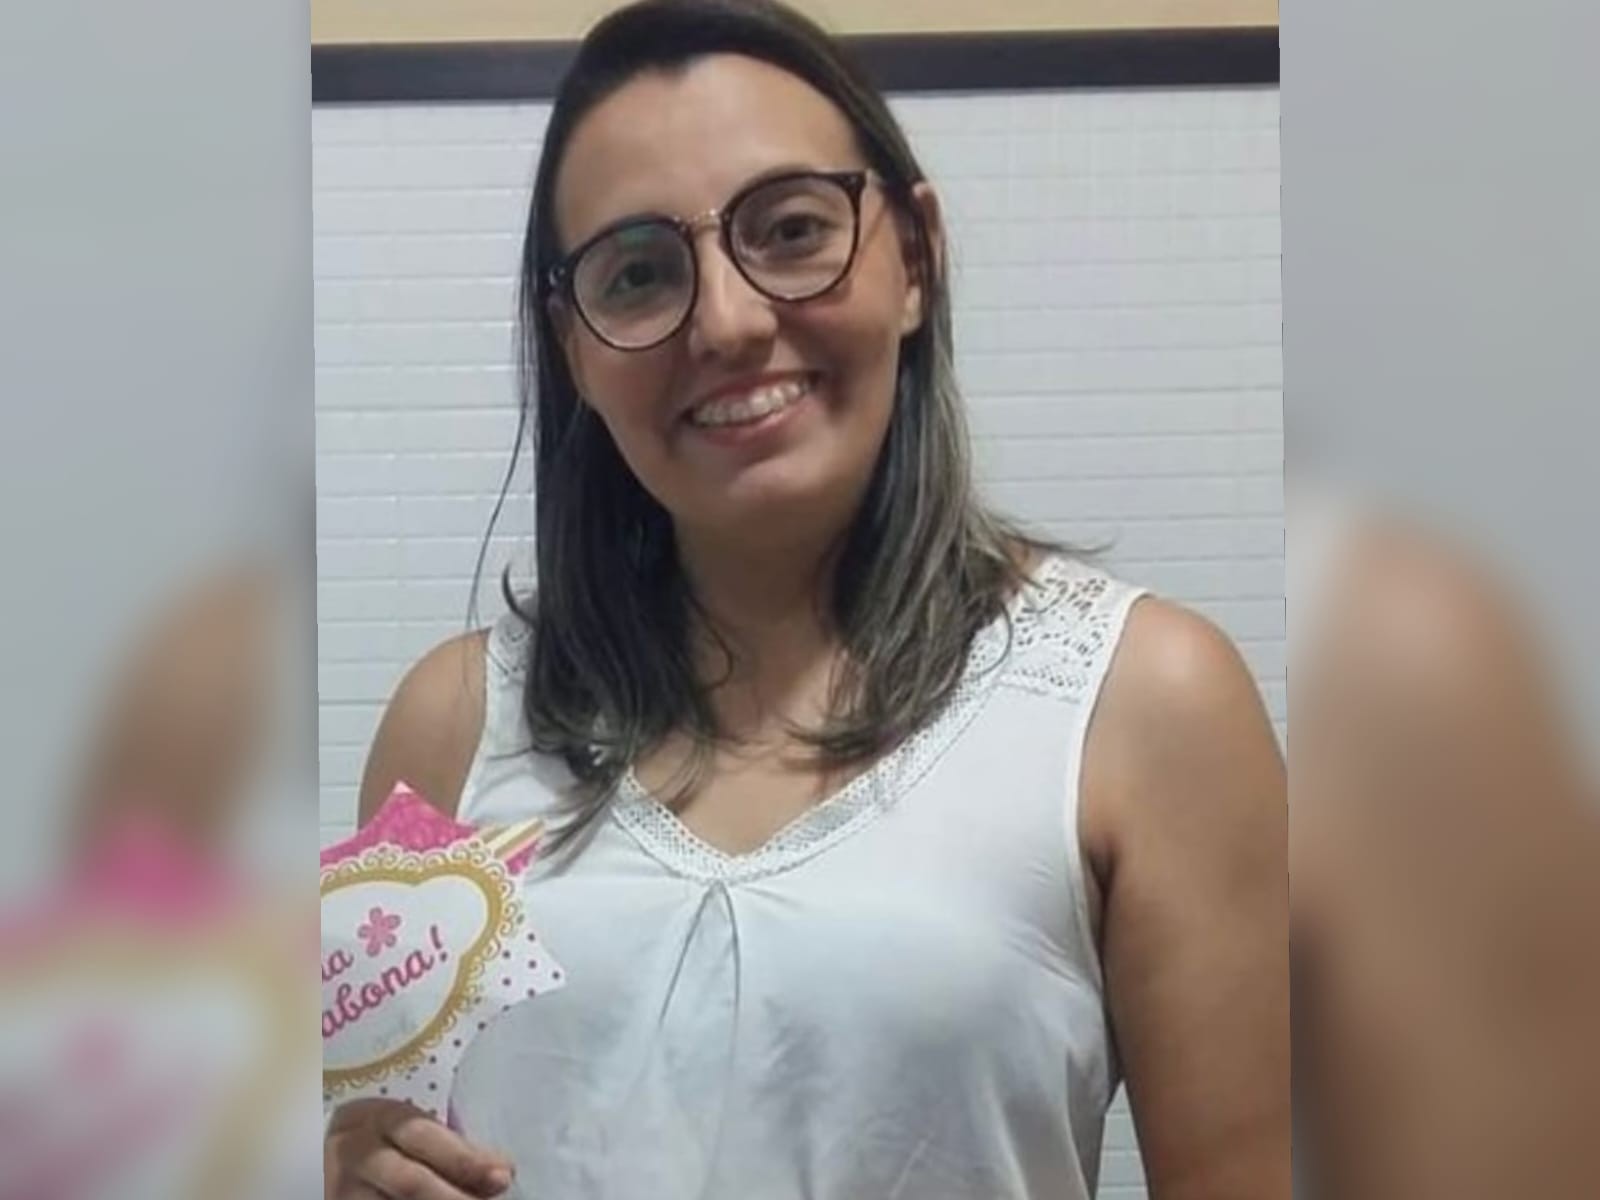 Motociclista colidiu duas vezes no carro de enfermeira antes de matá-la com tiro em Fortaleza